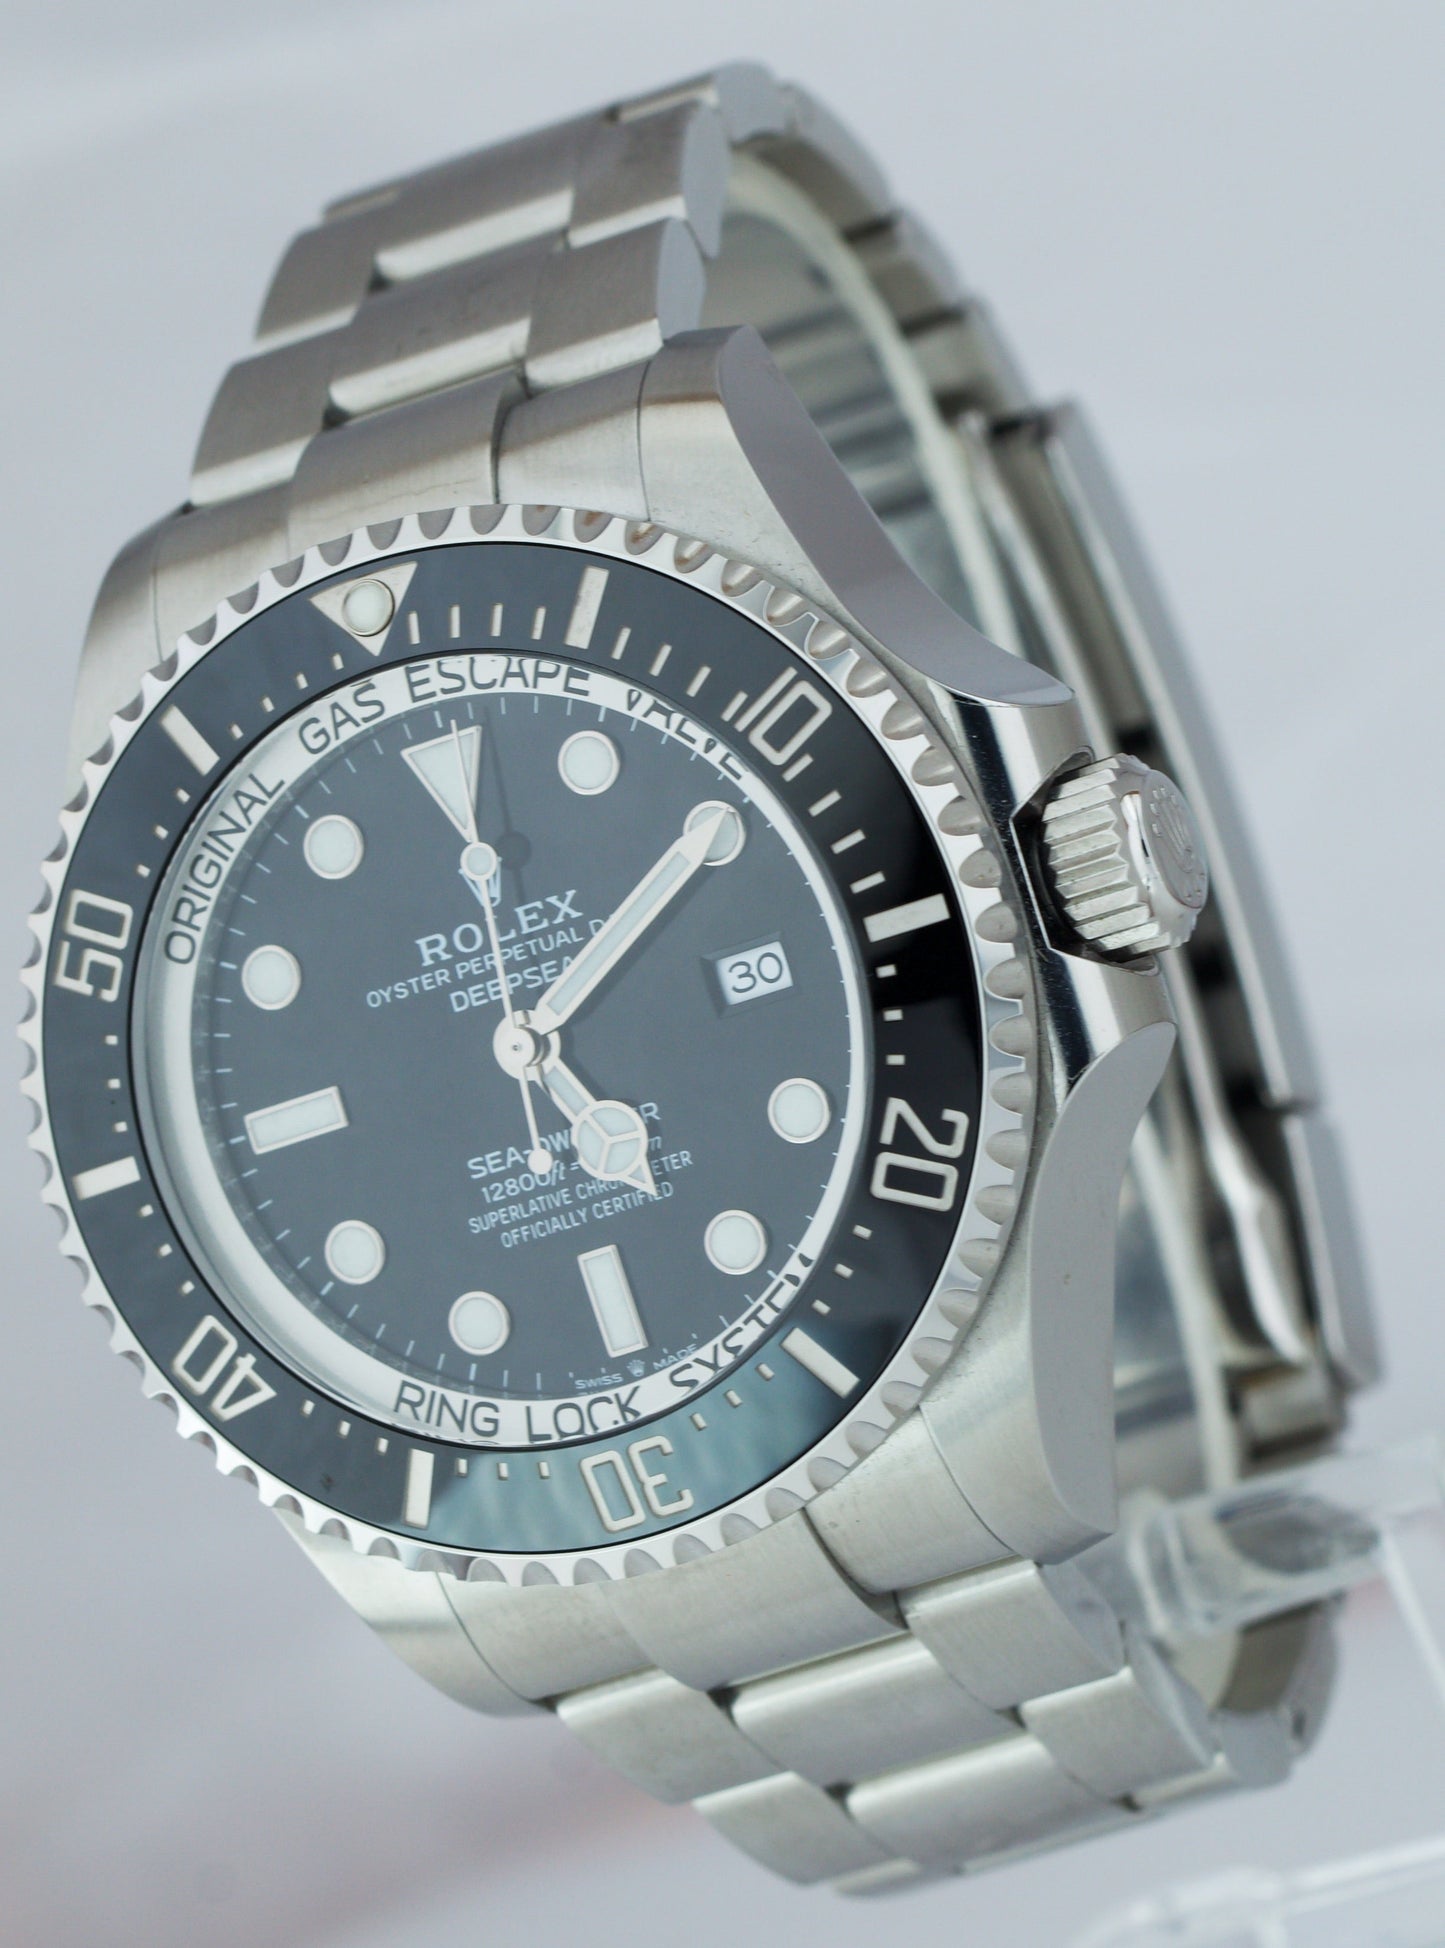 MINT Rolex Sea-Dweller Deepsea Black Stainless Steel 44mm Dive Watch 126660